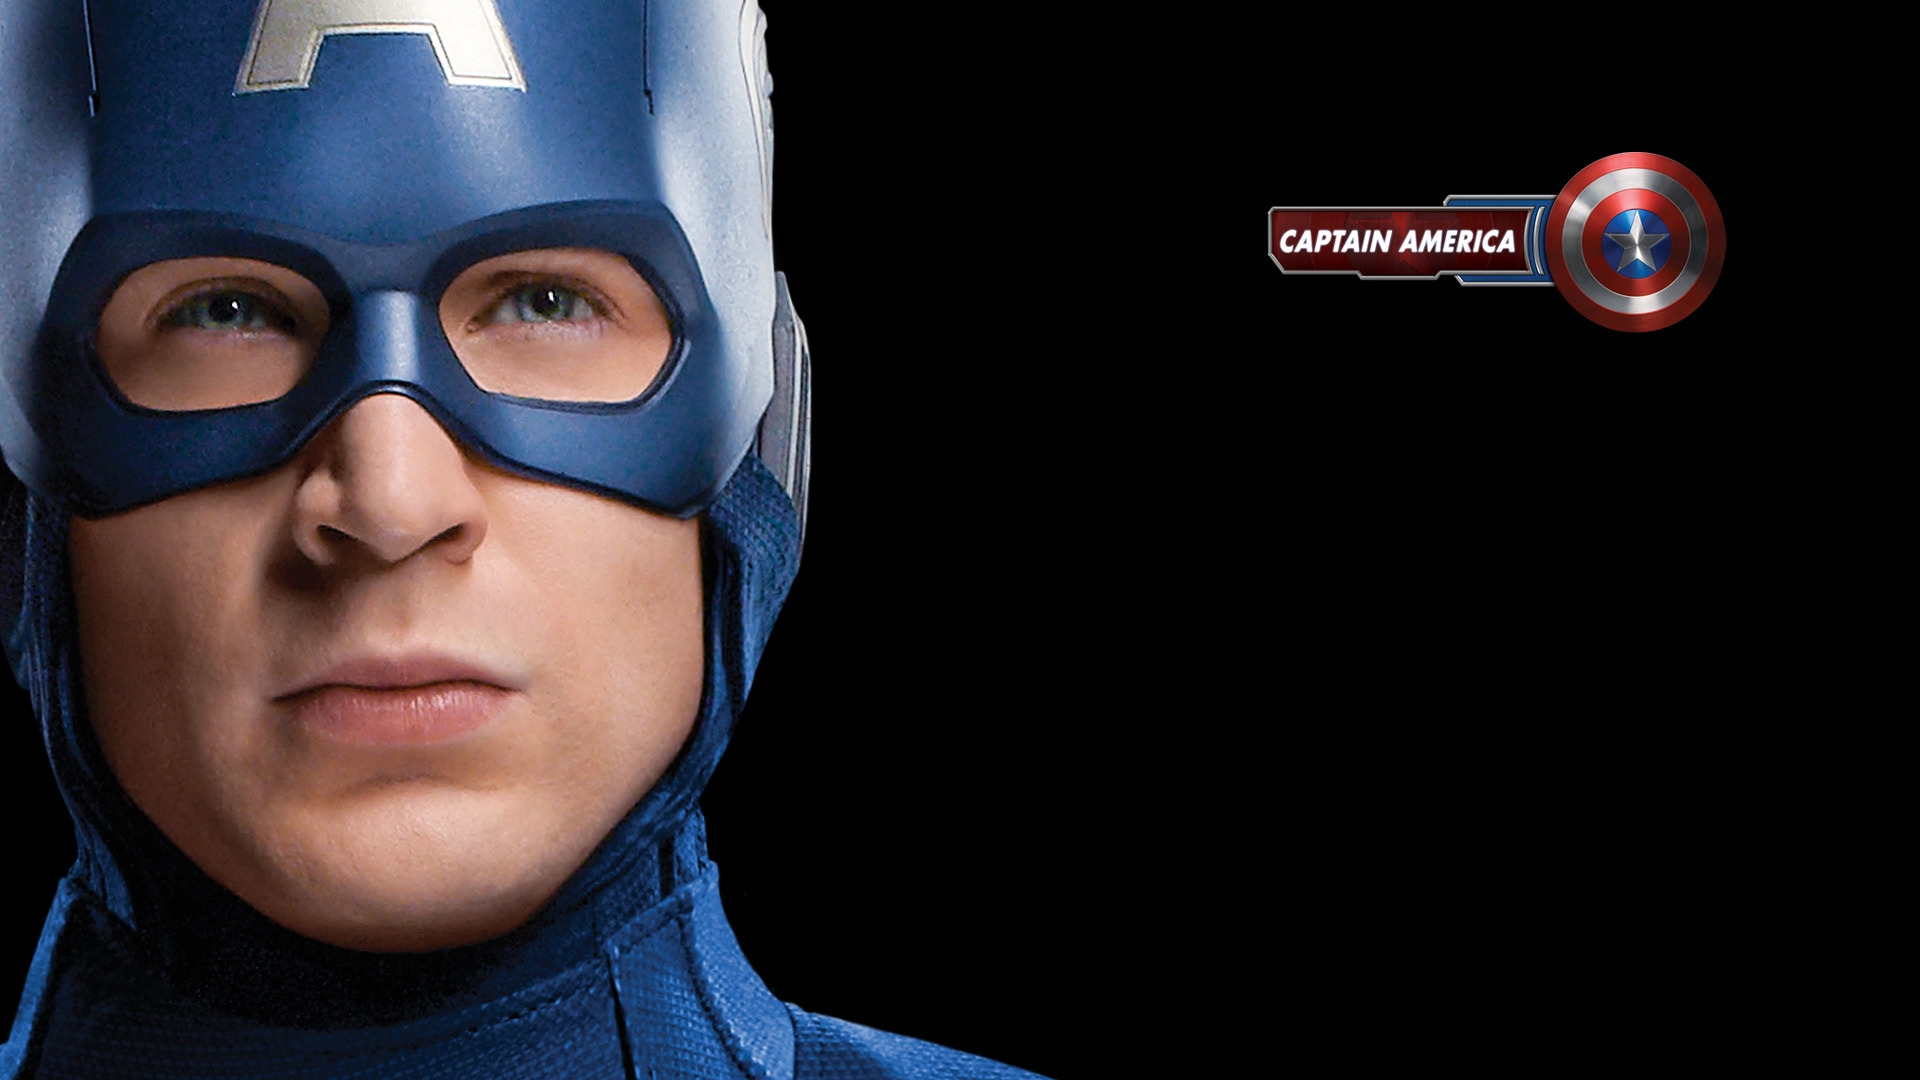 The Avengers Captain America for 1920 x 1080 HDTV 1080p resolution